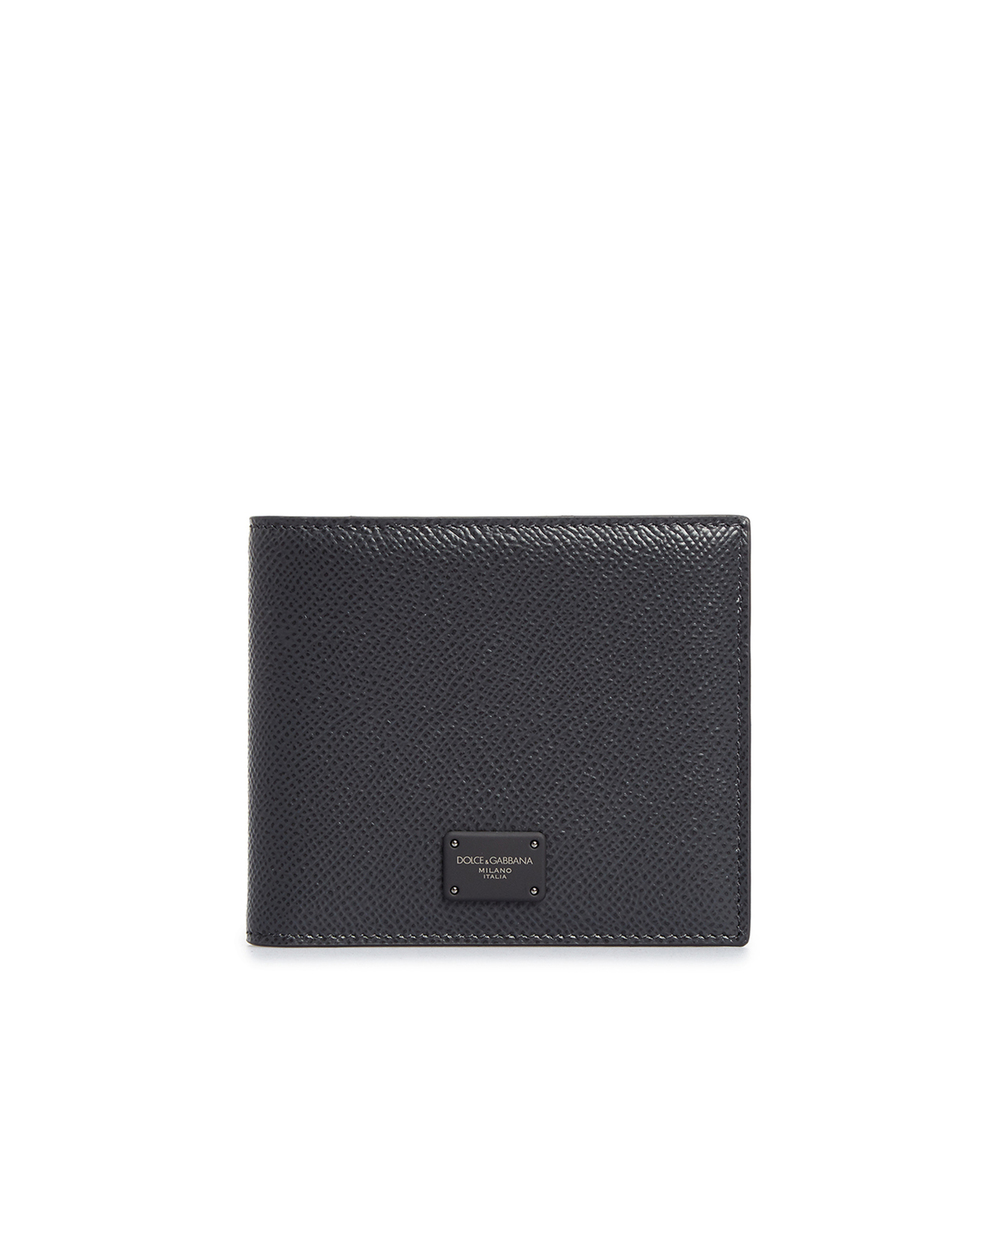 Кожаный кошелек Dolce&Gabbana BP1321-AZ602, серый цвет • Купить в интернет-магазине Kameron